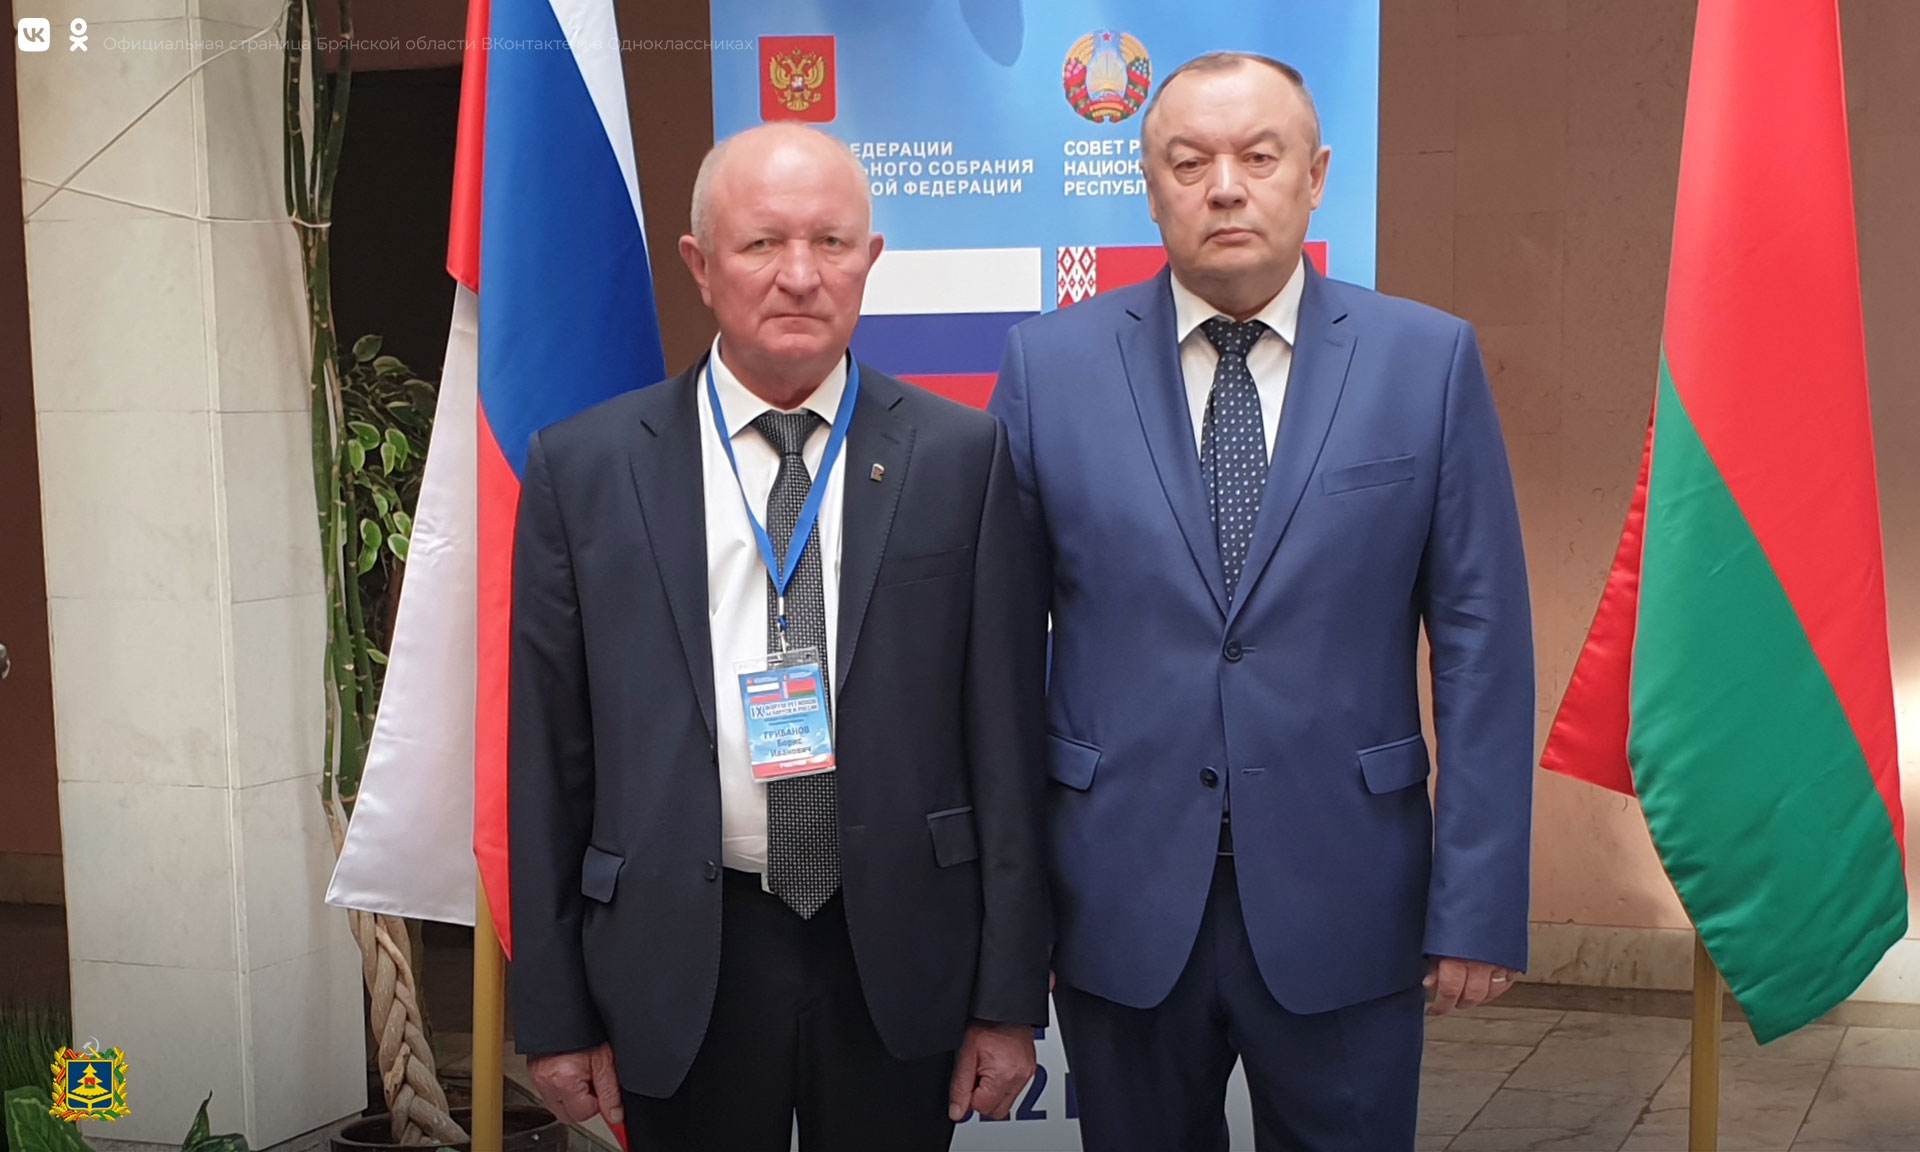 Брянская делегация участвует в IX форуме регионов Белоруссии и России